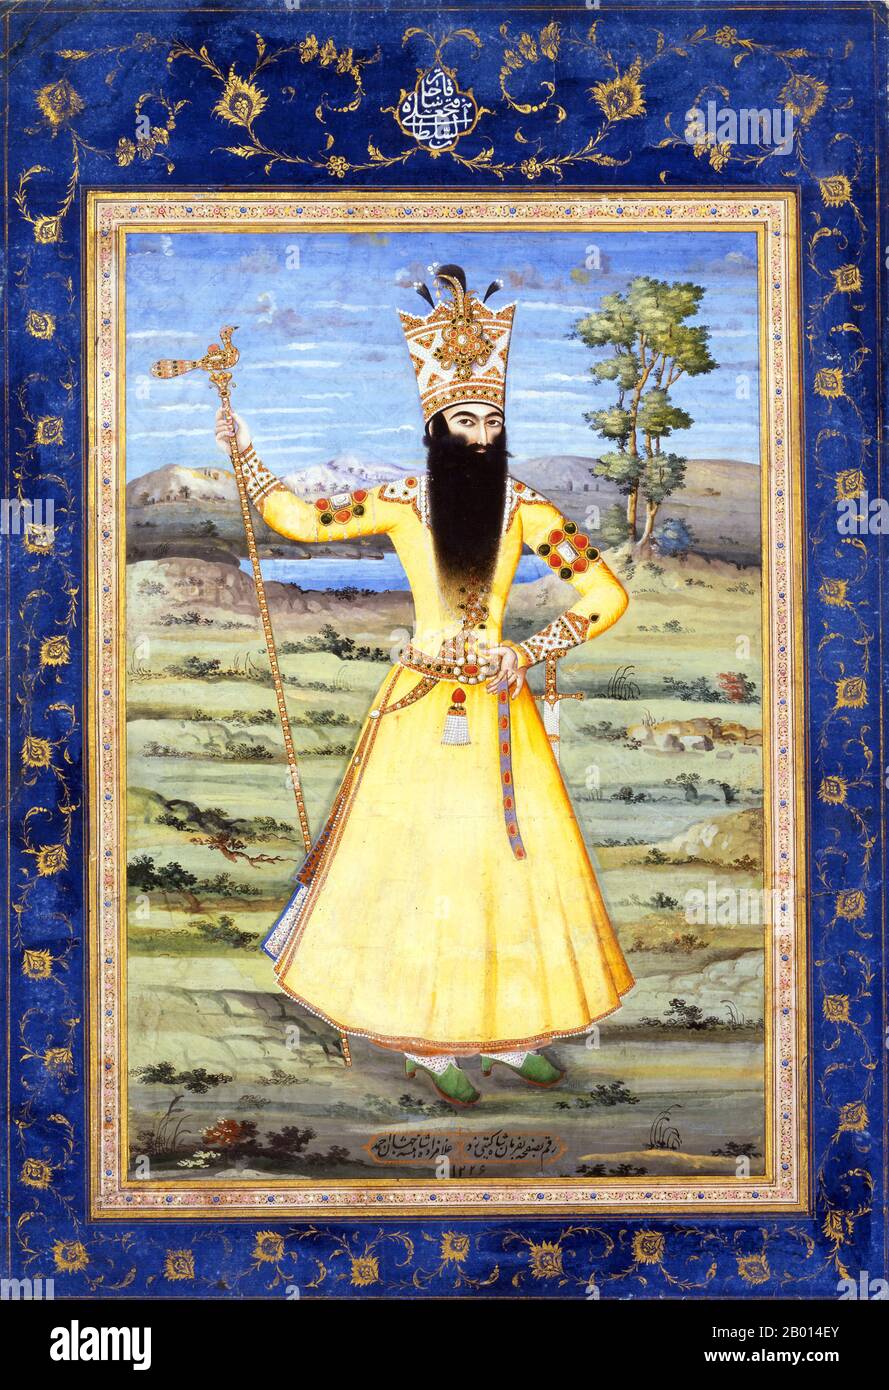 Iran : Portrait de Fath Ali Shah Qentra (5 septembre 1772 – 23 octobre). Peinture par Ahmad (fl. Début XIXe siècle), c. 1811. Fath-Ali Shah Qajar (Fathalishah, Fathali Shah, Fath Ali Shah) était le deuxième Shah Qajar (roi) d'Iran. Il a régné du 17 juin 1797 au 23 octobre 1834, au cours duquel l'Iran a définitivement perdu ses territoires du nord du Caucase (Arménie moderne, Azerbaïdjan, Daghestan et Géorgie) dans l'Empire russe après les guerres russo-perses de 1804-1813 et de 1826-1828. À la fin de son règne, l'Iran était sur le point de s'effondrer en raison de graves problèmes économiques. Banque D'Images